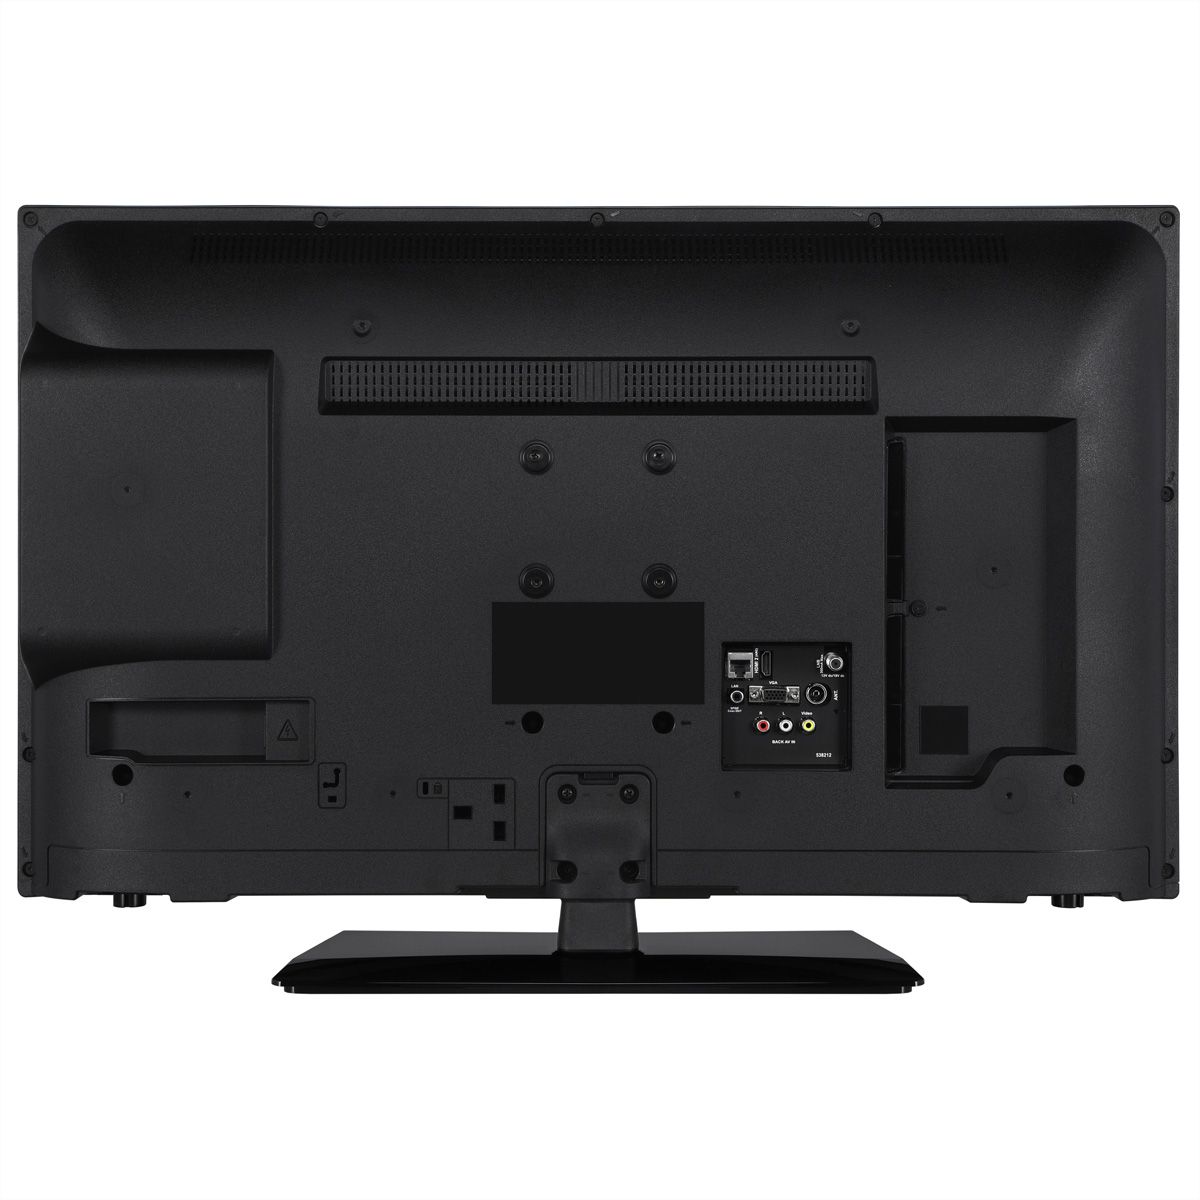 Lenco DVL-3273BK - 32 Smart TV avec lecteur DVD intégré, noir